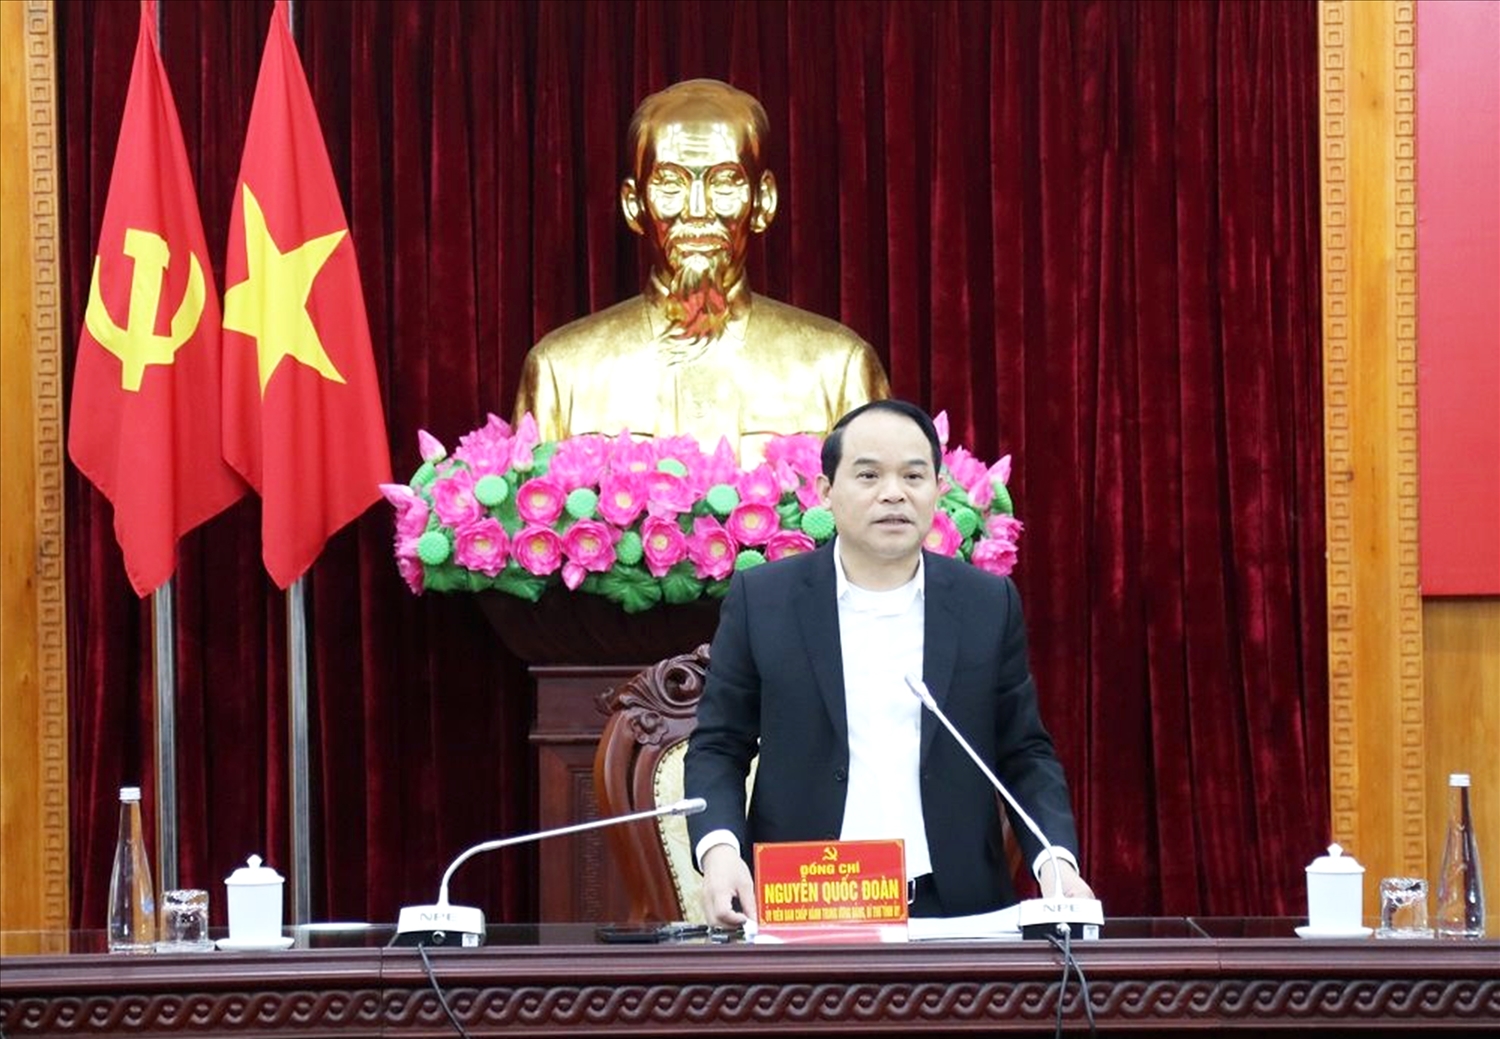 Ông Nguyễn Quốc Đoàn, Bí thư Tỉnh ủy Lạng Sơn yêu cầu Bí thư cấp ủy các cấp, tổ chức đảng, chính quyền chủ động tiếp dân